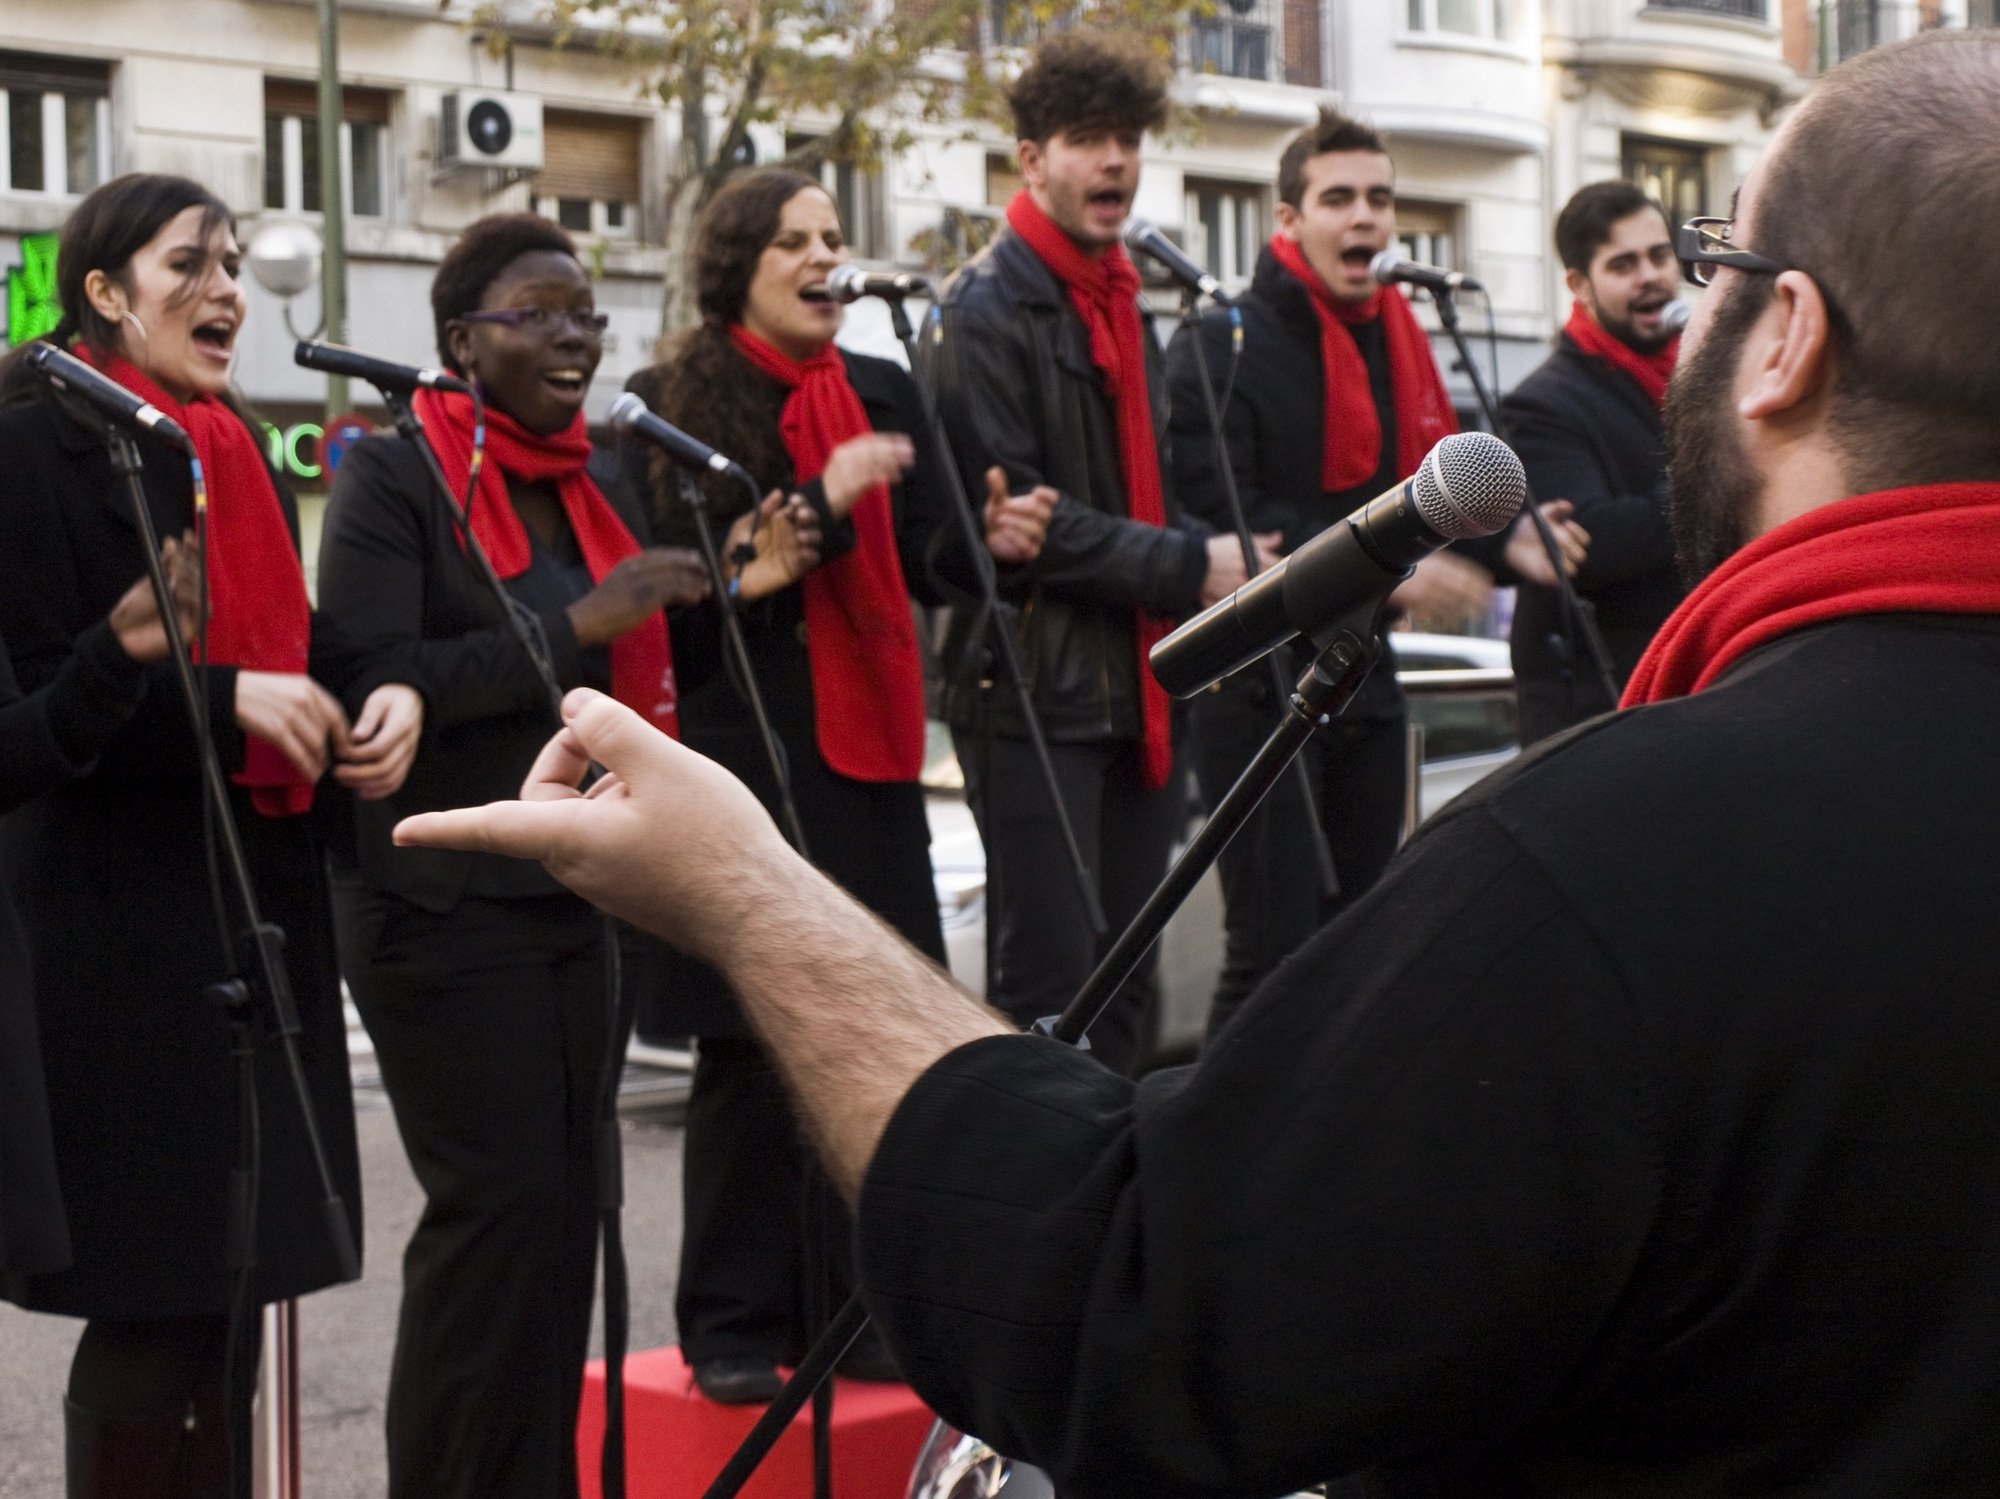 La Diputación de Palencia celebrará el sábado su concierto de Música Sacra con el grupo Gospel Factory